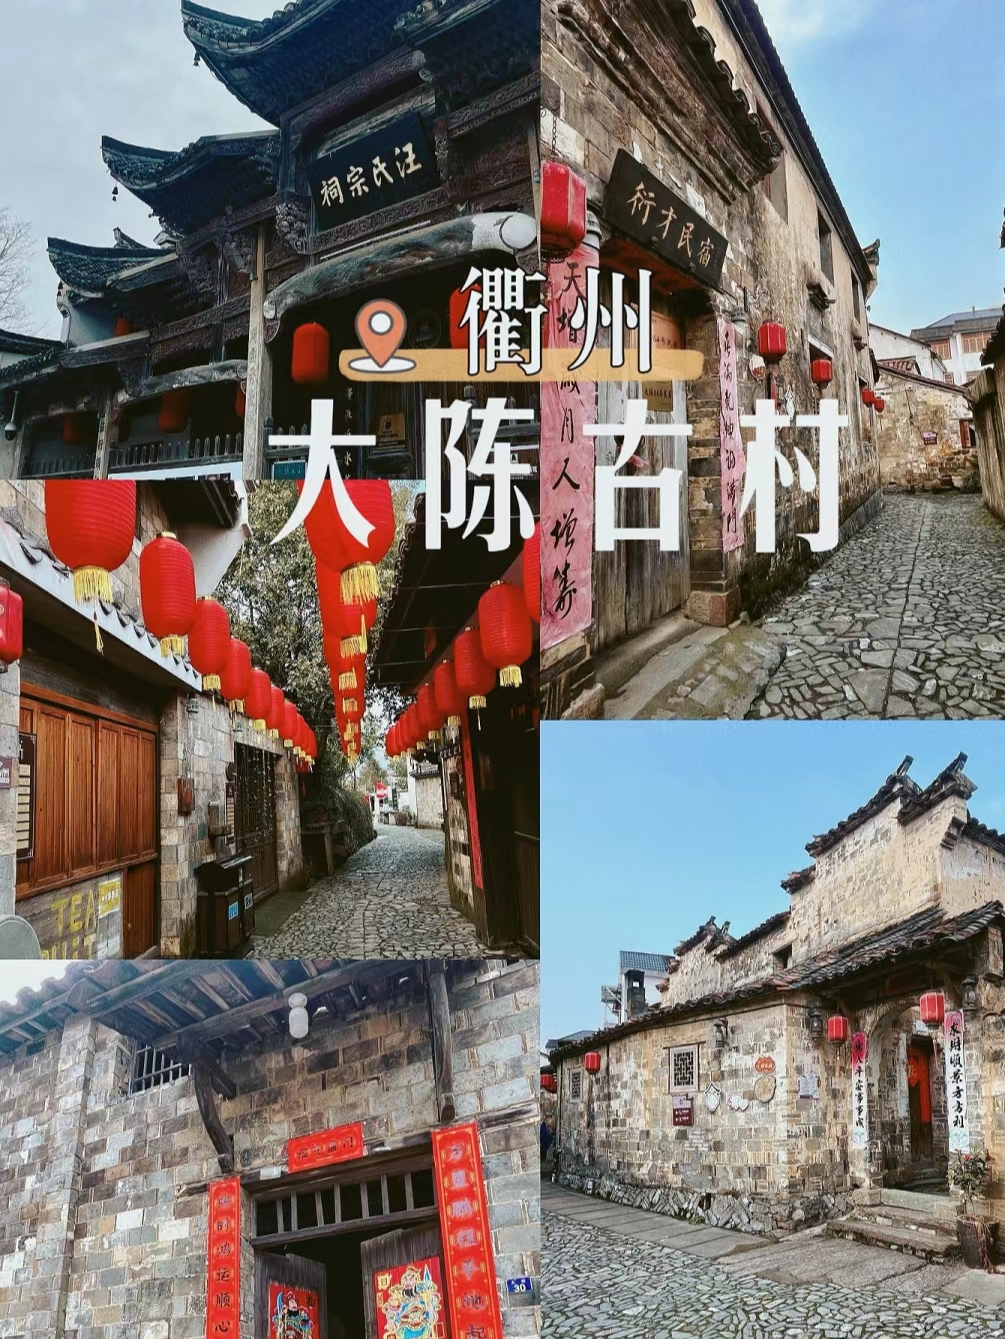 衢州|超小众的衢州隐秘宝藏古村落 大陈古村，是位于衢州江山的具有600多年历史的古村落，以徽派建筑和